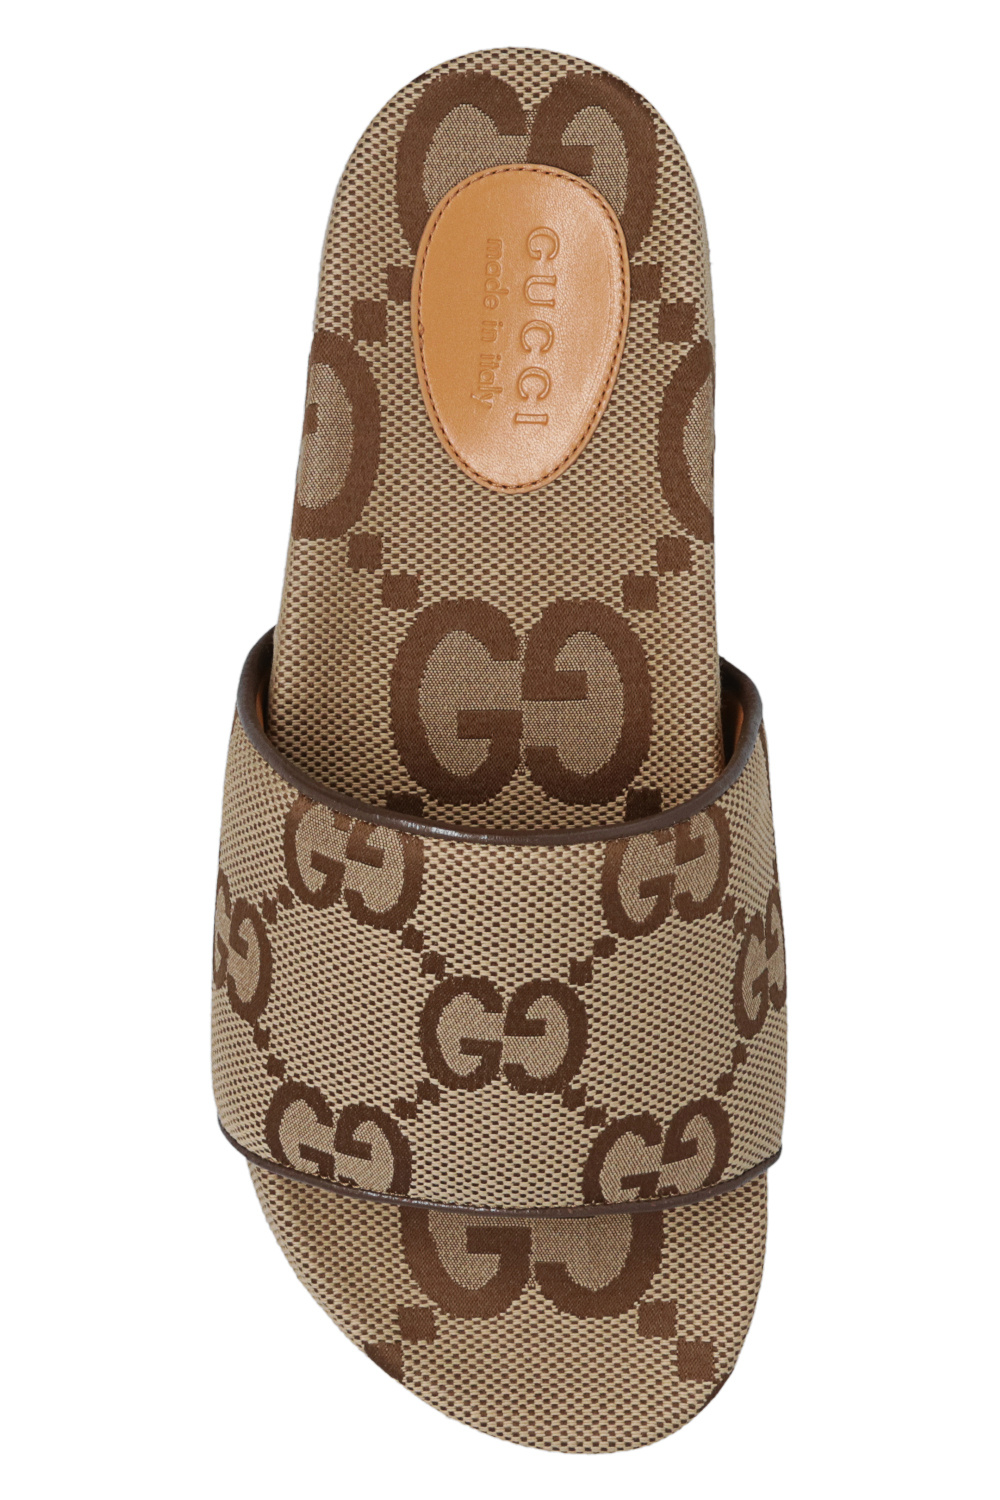 Gucci gucci designer accessories